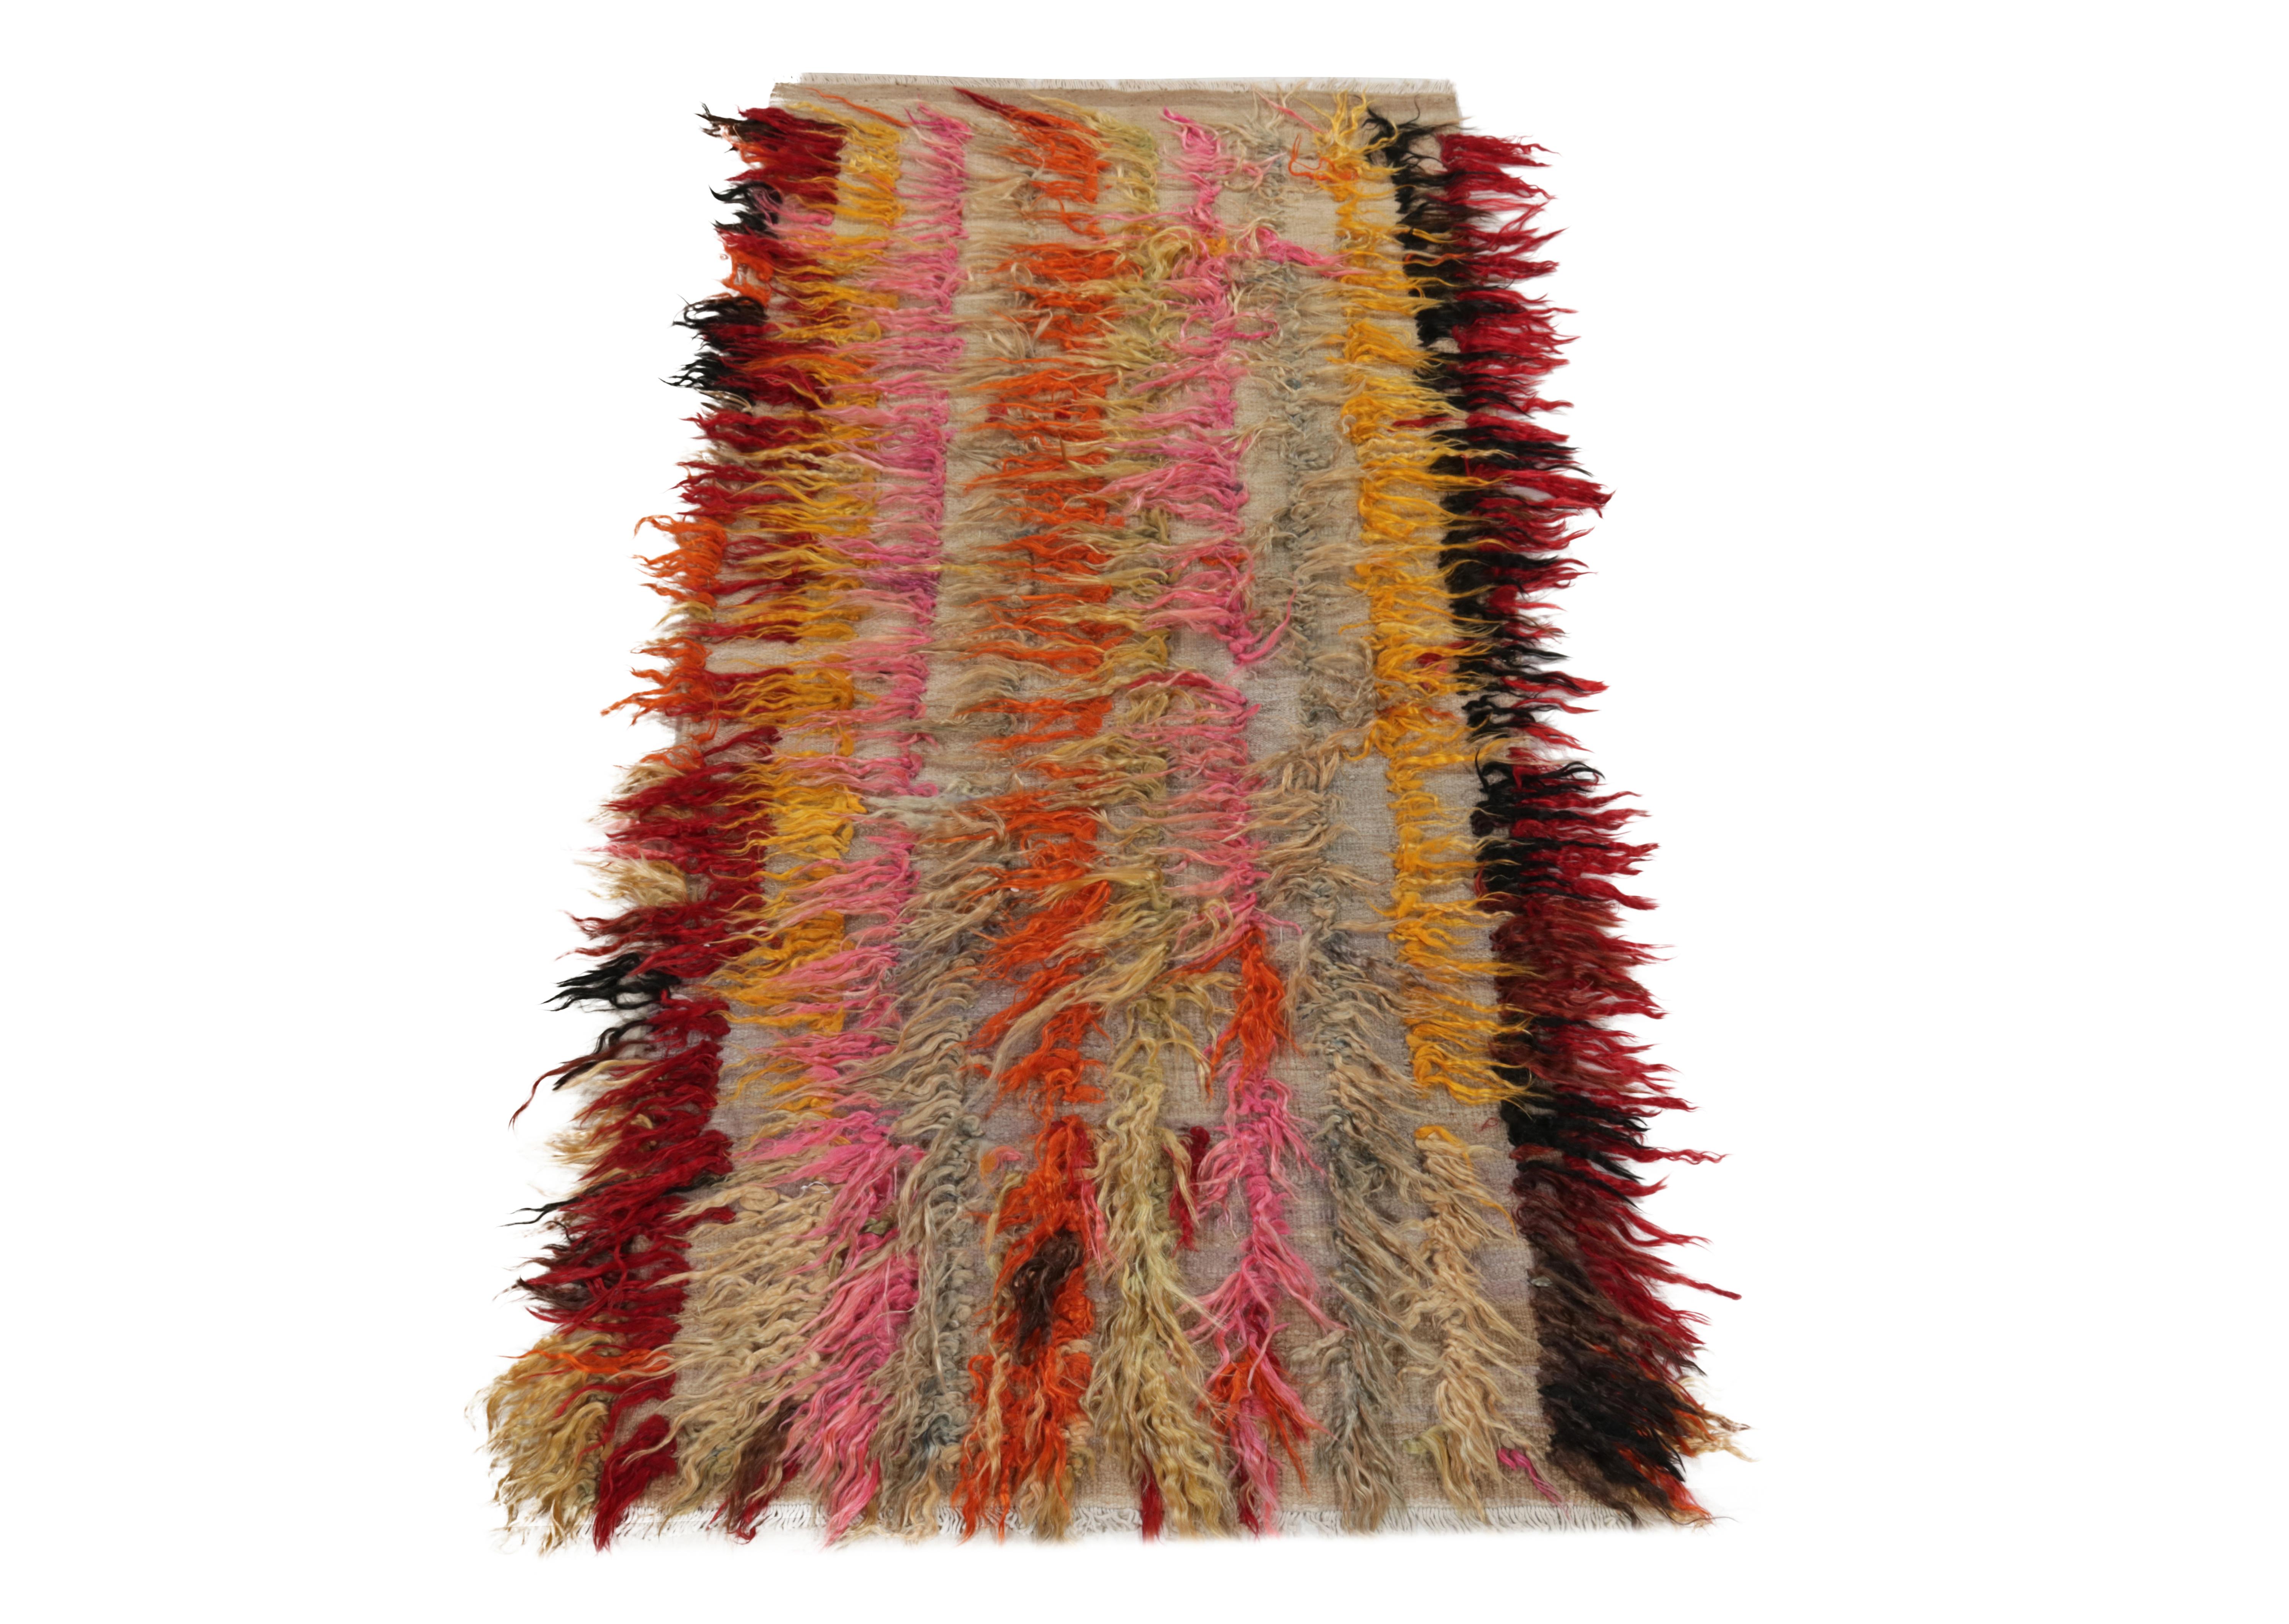 Noué à la main en laine vers 1950-1960, ce chemin de table vintage 3x6 présente un délicieux velours haut dans des tons audacieux de rouge, noir, jaune mangue, rose et gris, jouant joyeusement avec la texture tulu haute et basse de l'époque du